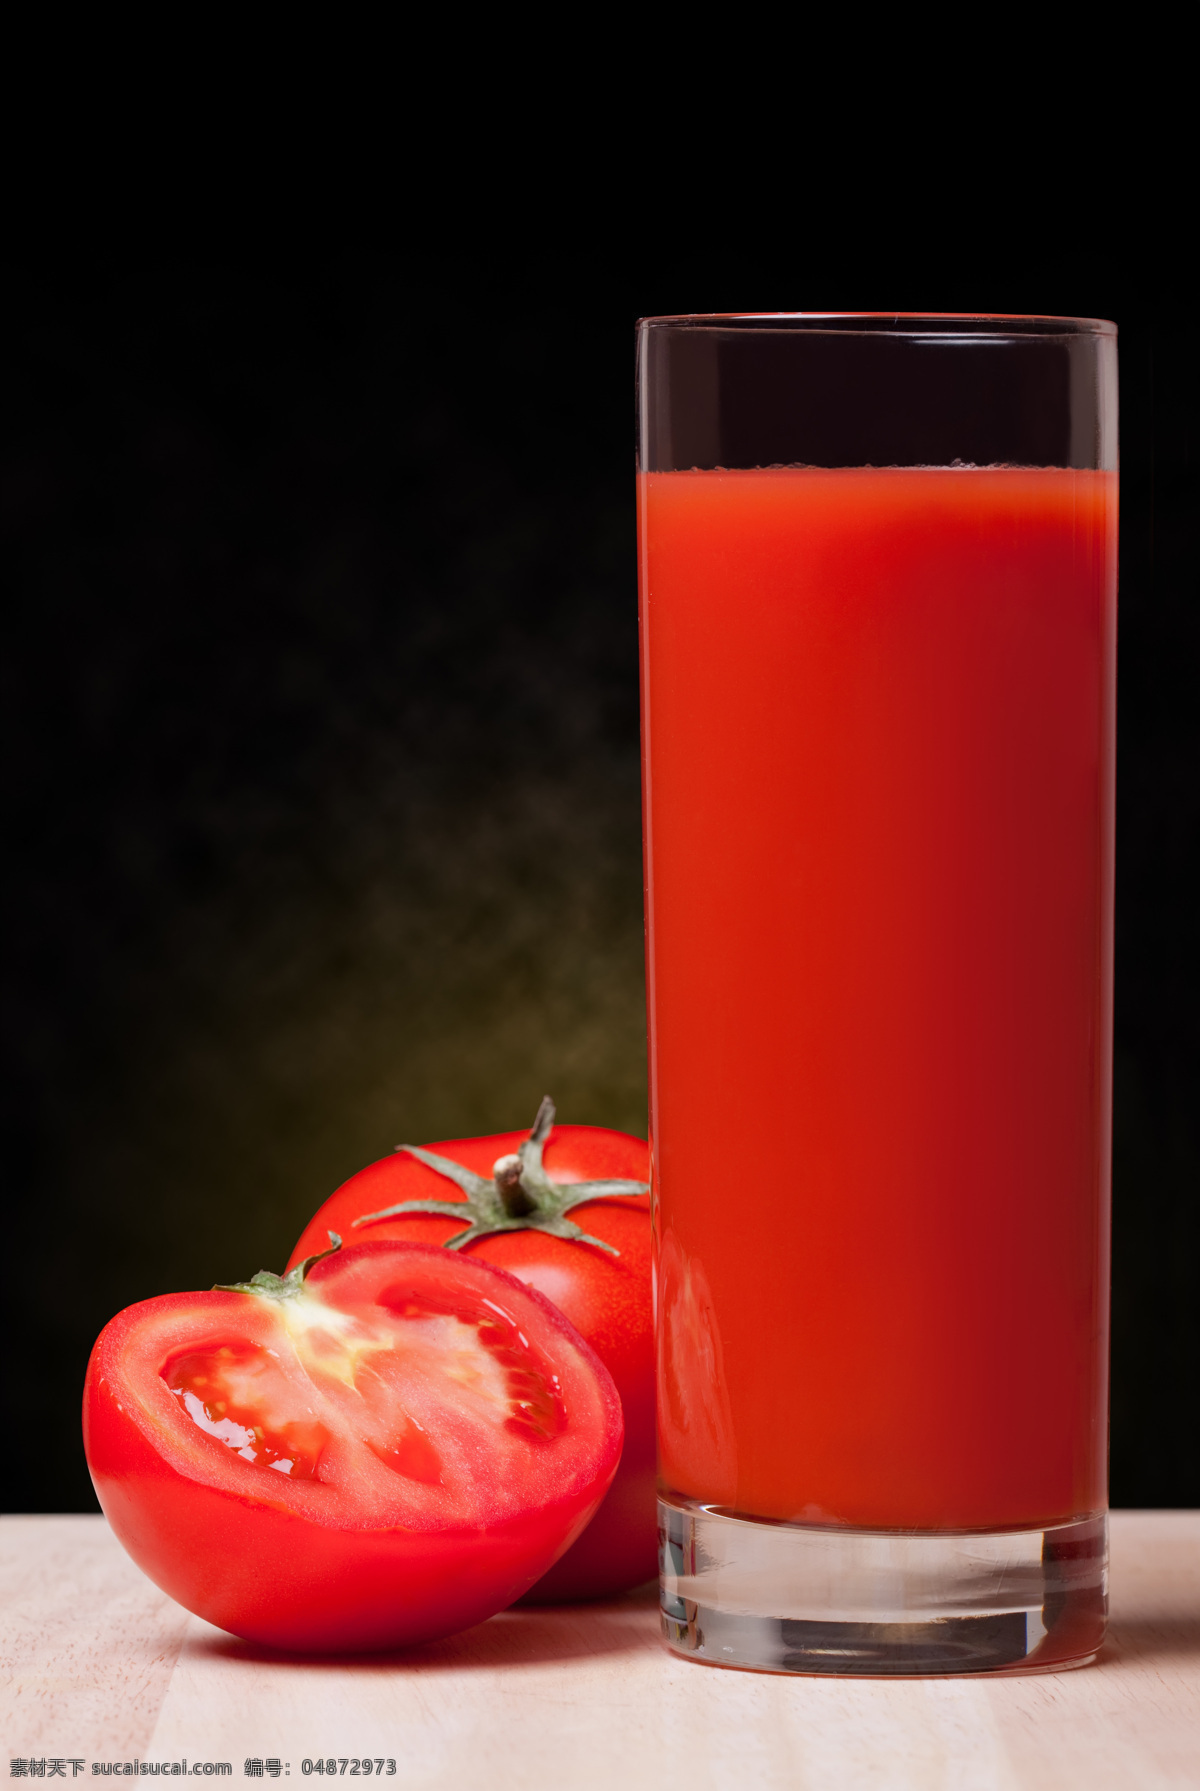 一杯 果汁 旁 西红柿 一个半 一半西红柿 切开 一杯果汁 西红柿汁 杯子 透明杯子 盛有 红色果汁 高清图片 蔬菜图片 餐饮美食